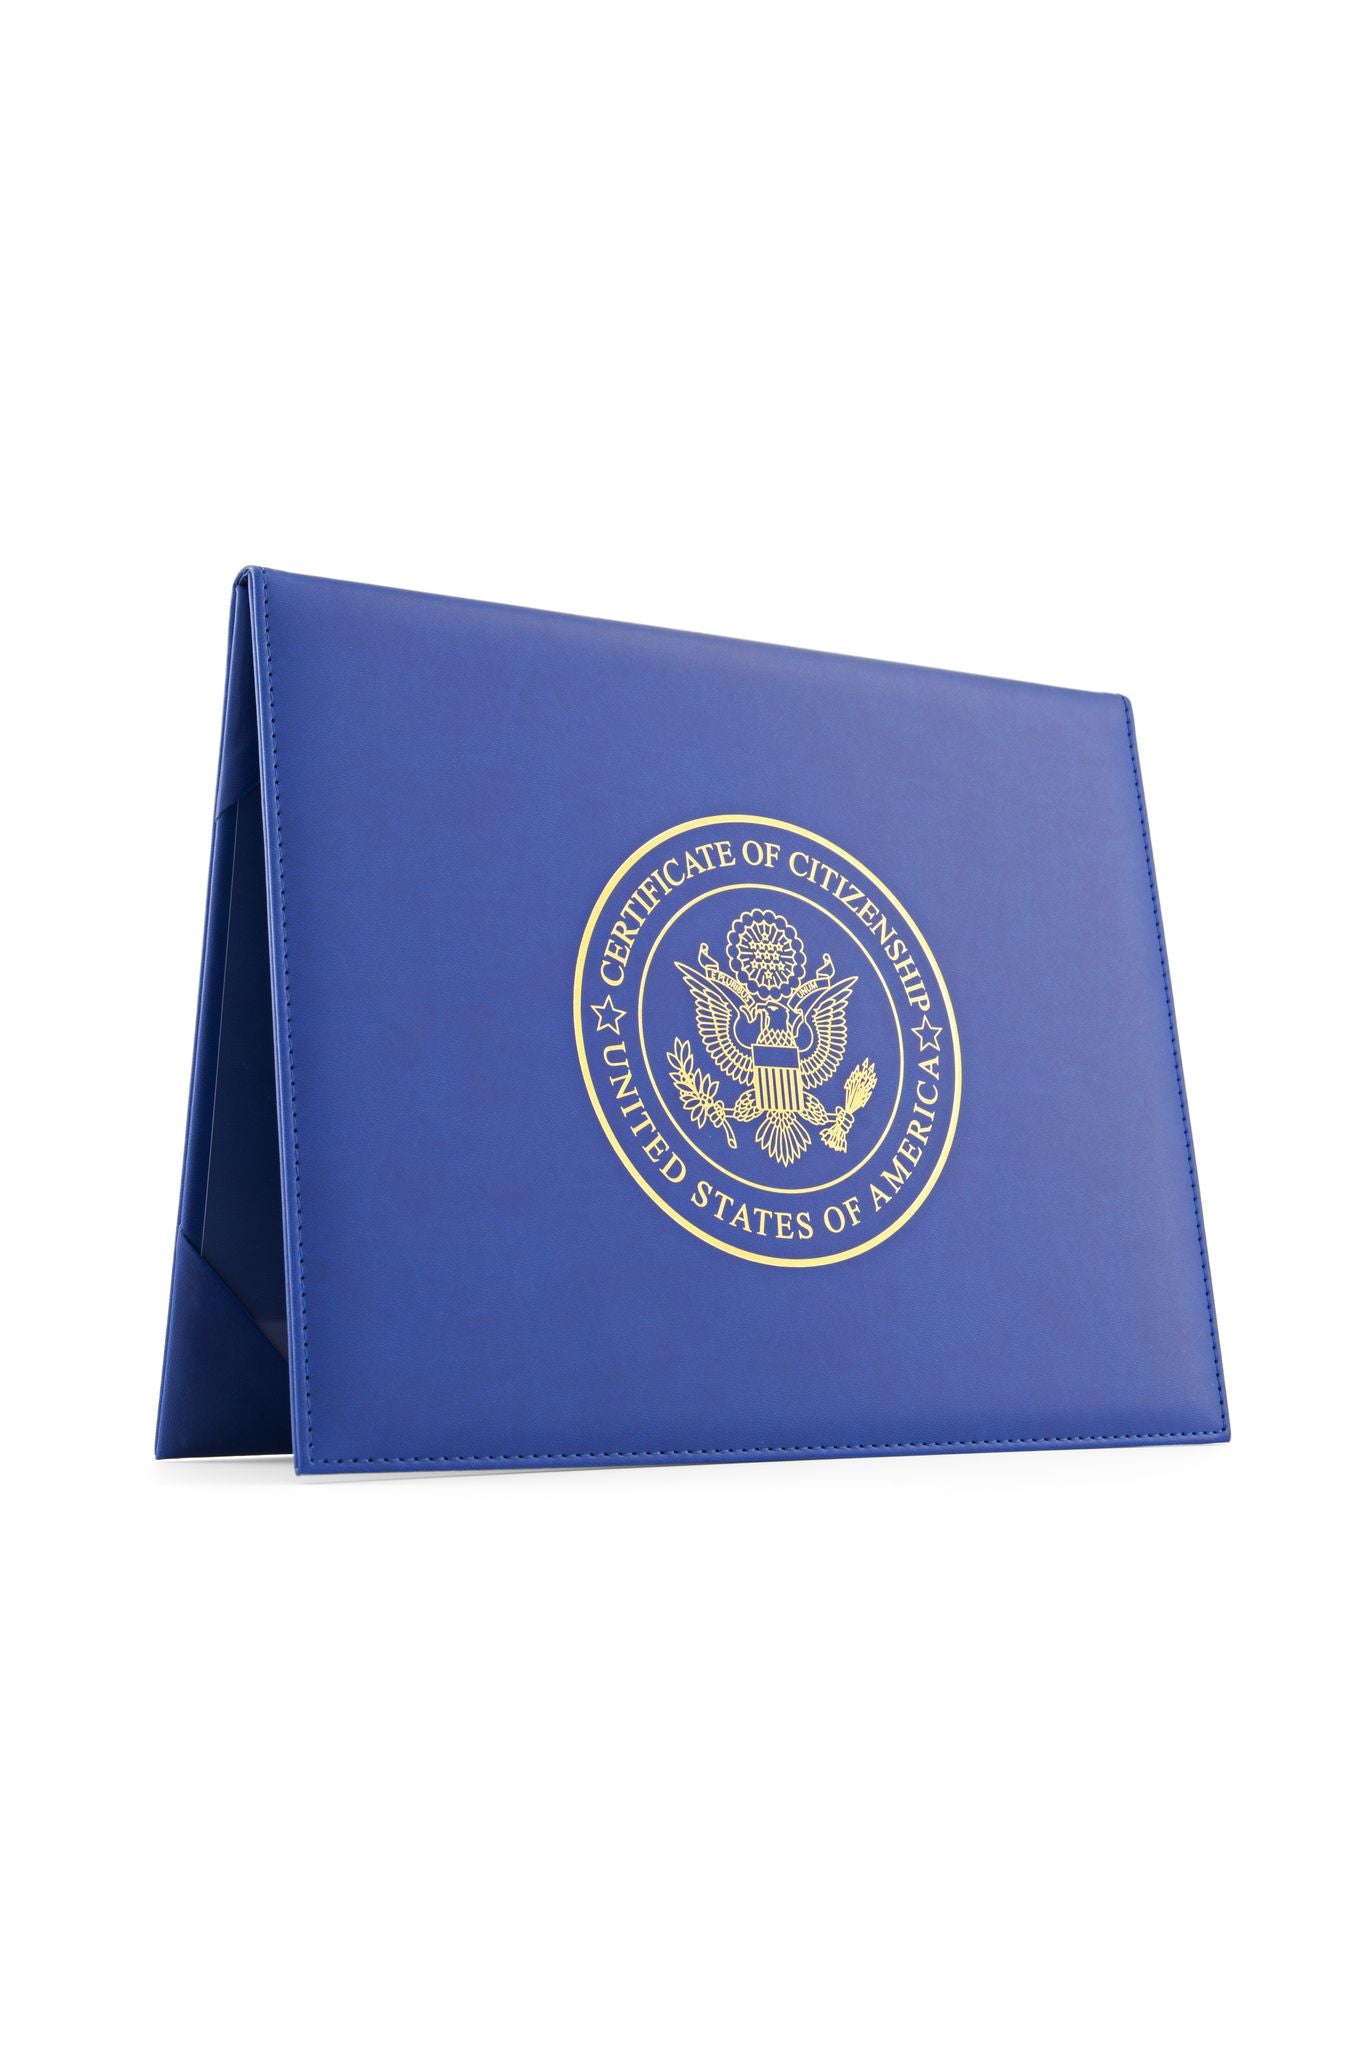 Certificado estadounidense de naturalización de titular de ciudadanía